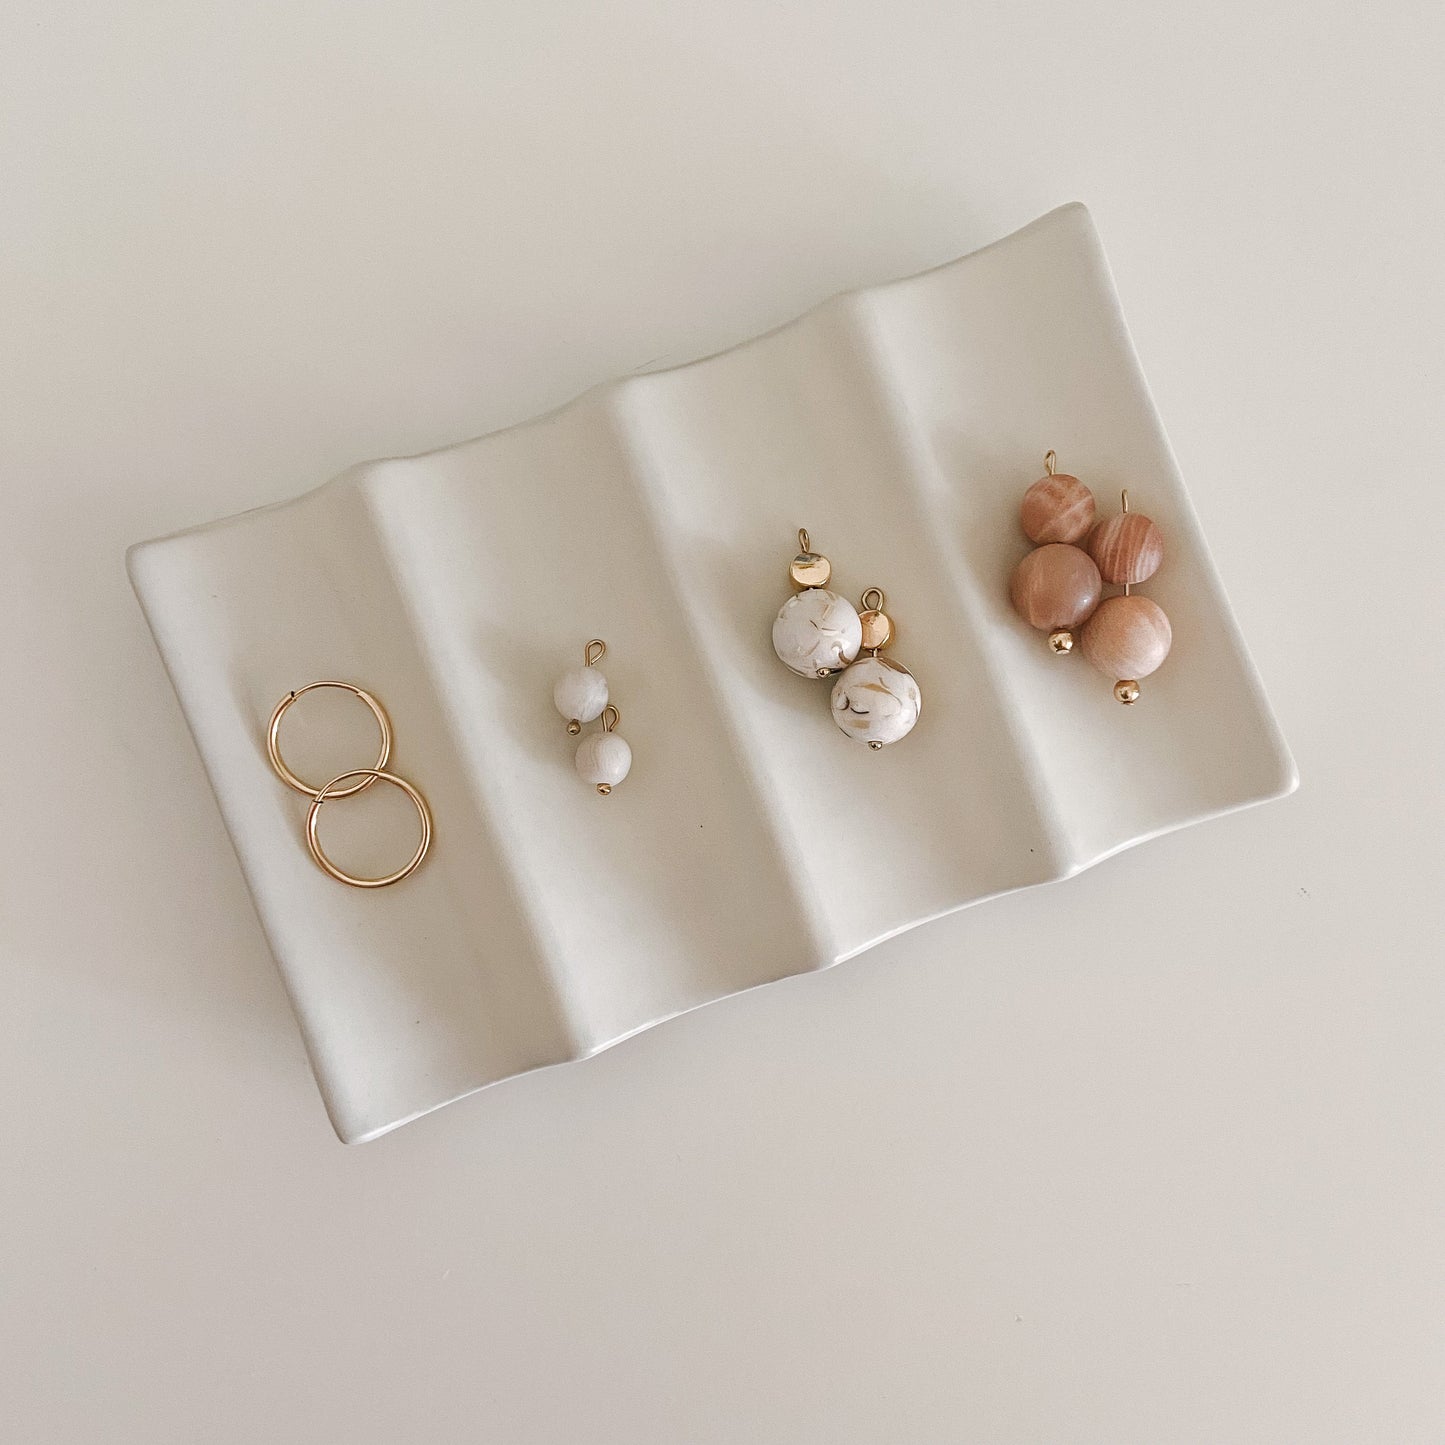 The Capsule Set — earrings